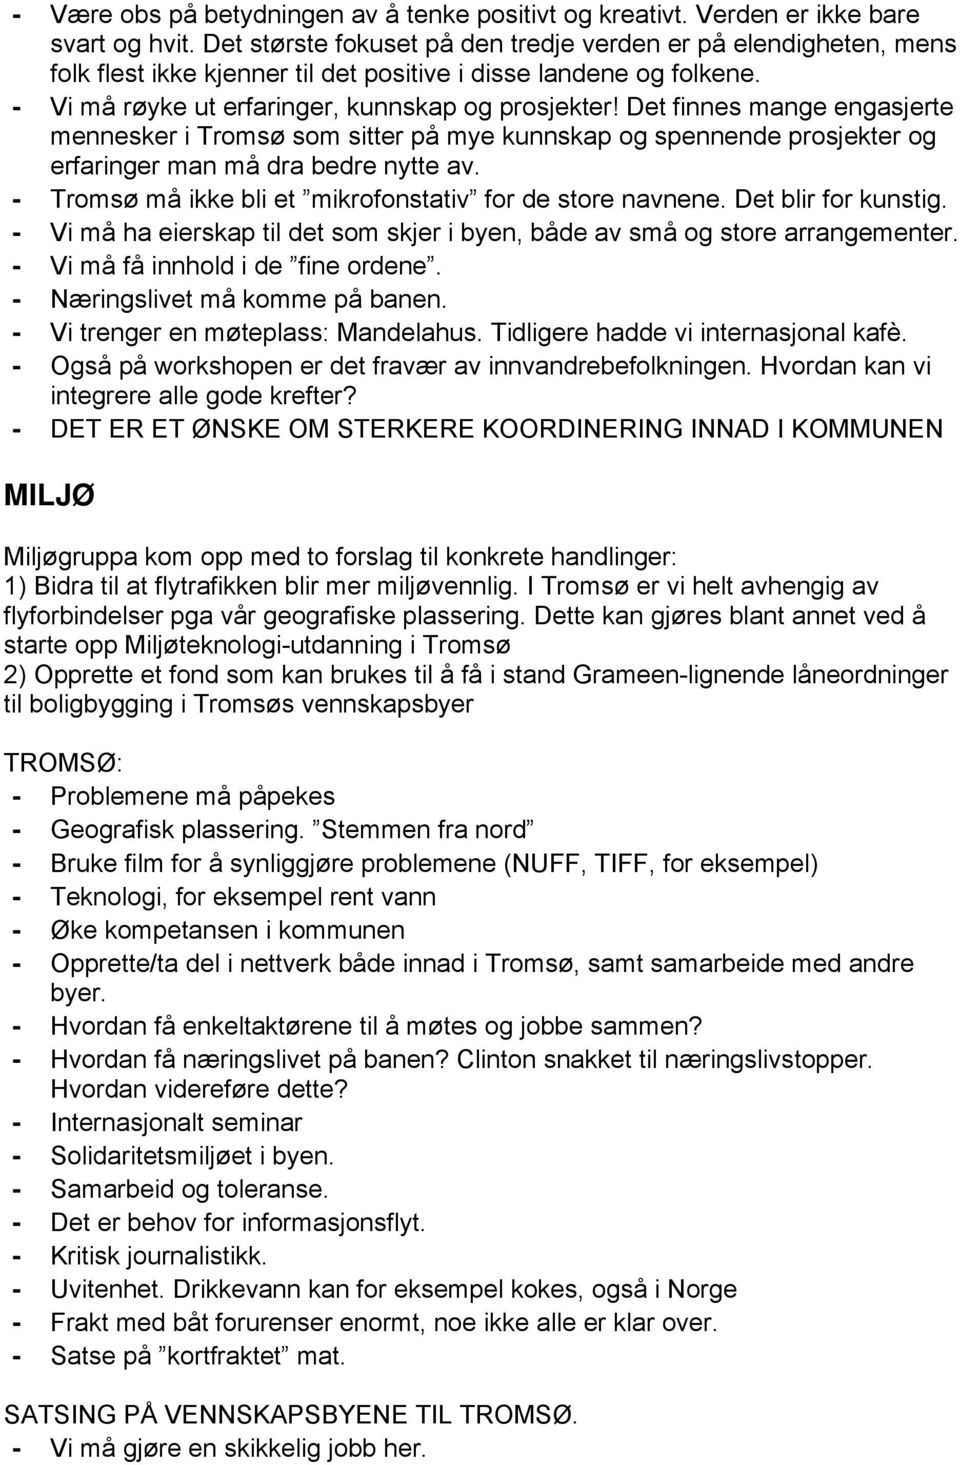 Det finnes mange engasjerte mennesker i Tromsø som sitter på mye kunnskap og spennende prosjekter og erfaringer man må dra bedre nytte av. - Tromsø må ikke bli et mikrofonstativ for de store navnene.